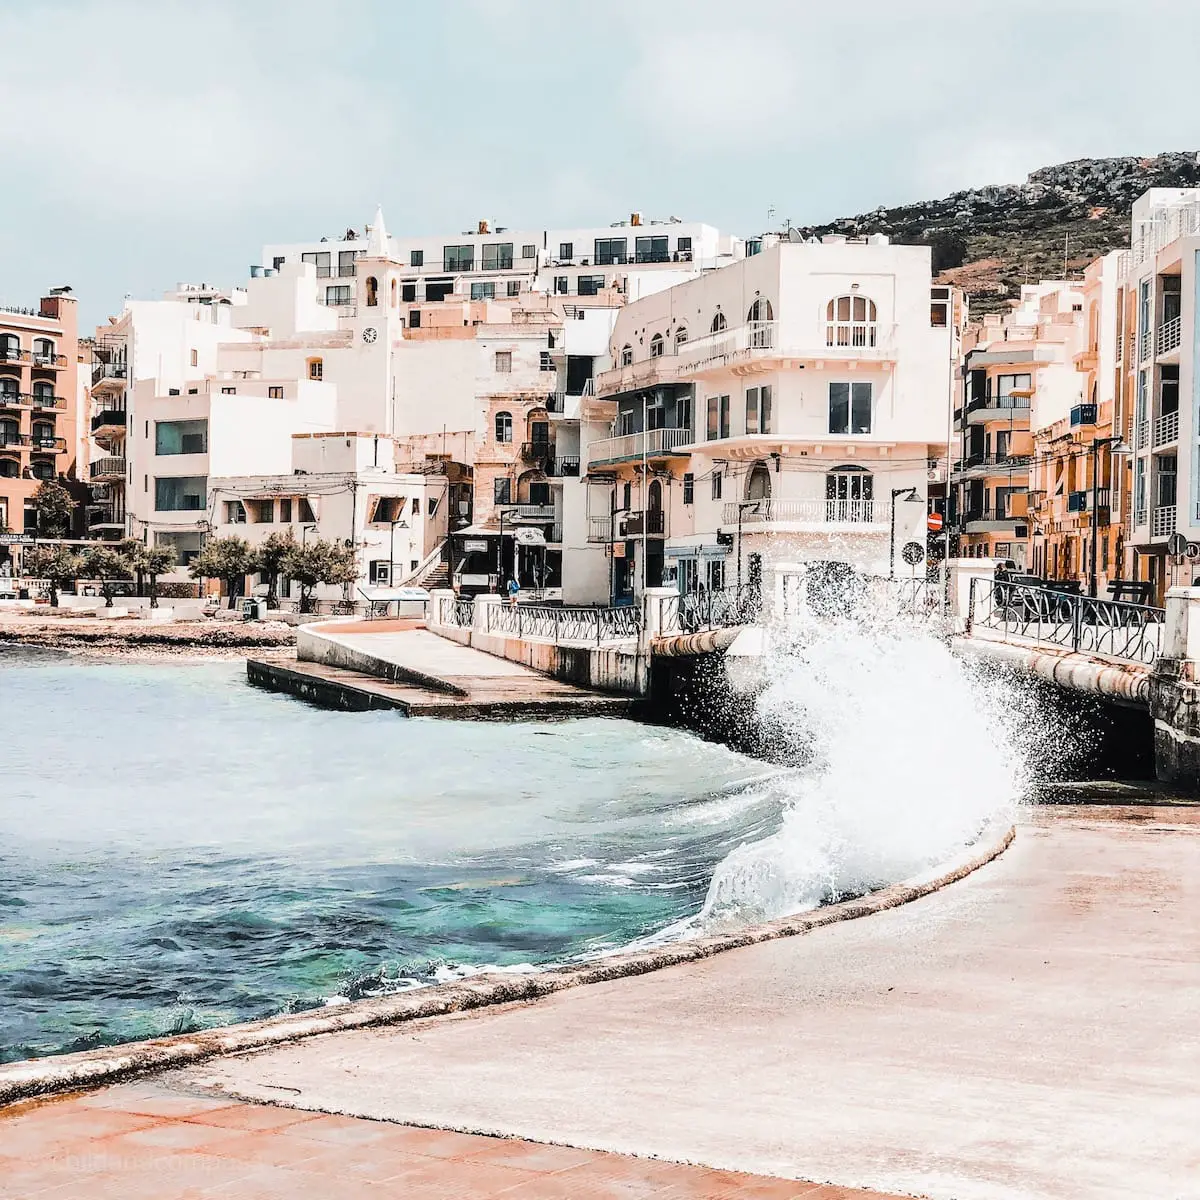 Marsalforn, Gozo Urlaub, Gozo Sehenswürdigkeiten, Malta Urlaub ohne Mietwagen, Malta Rundreise